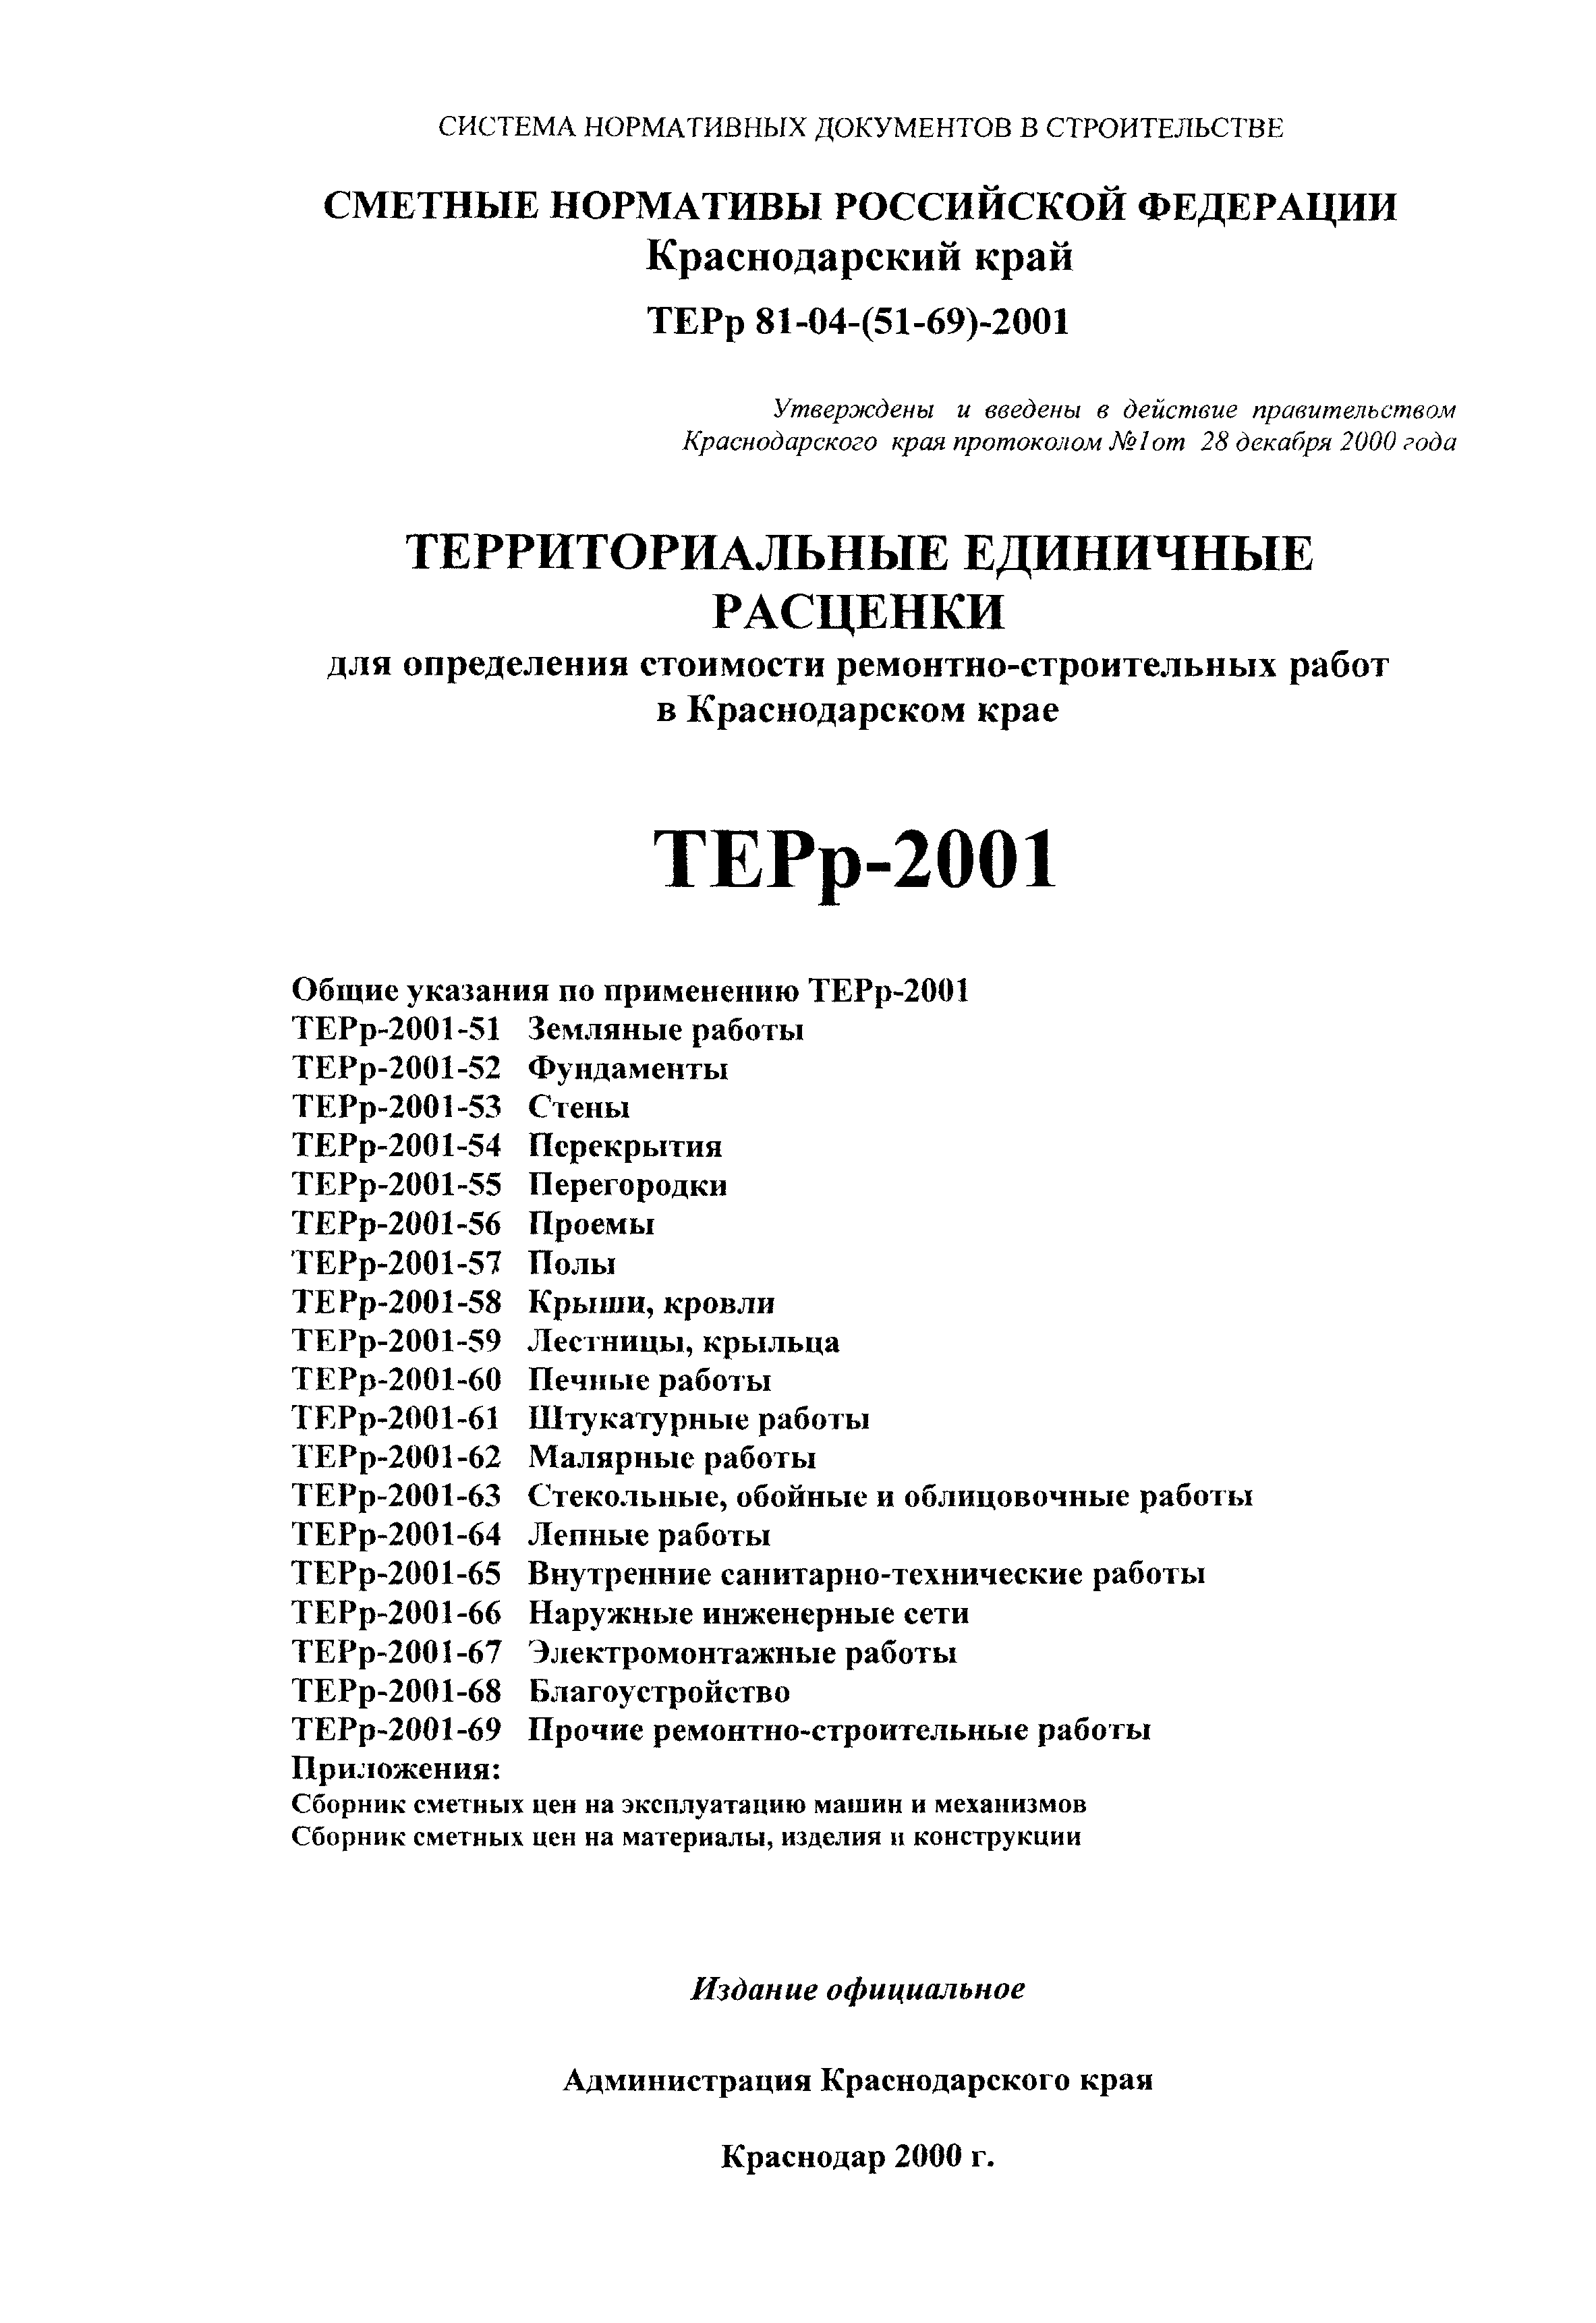 ТЕРр Краснодарского края 2001-62